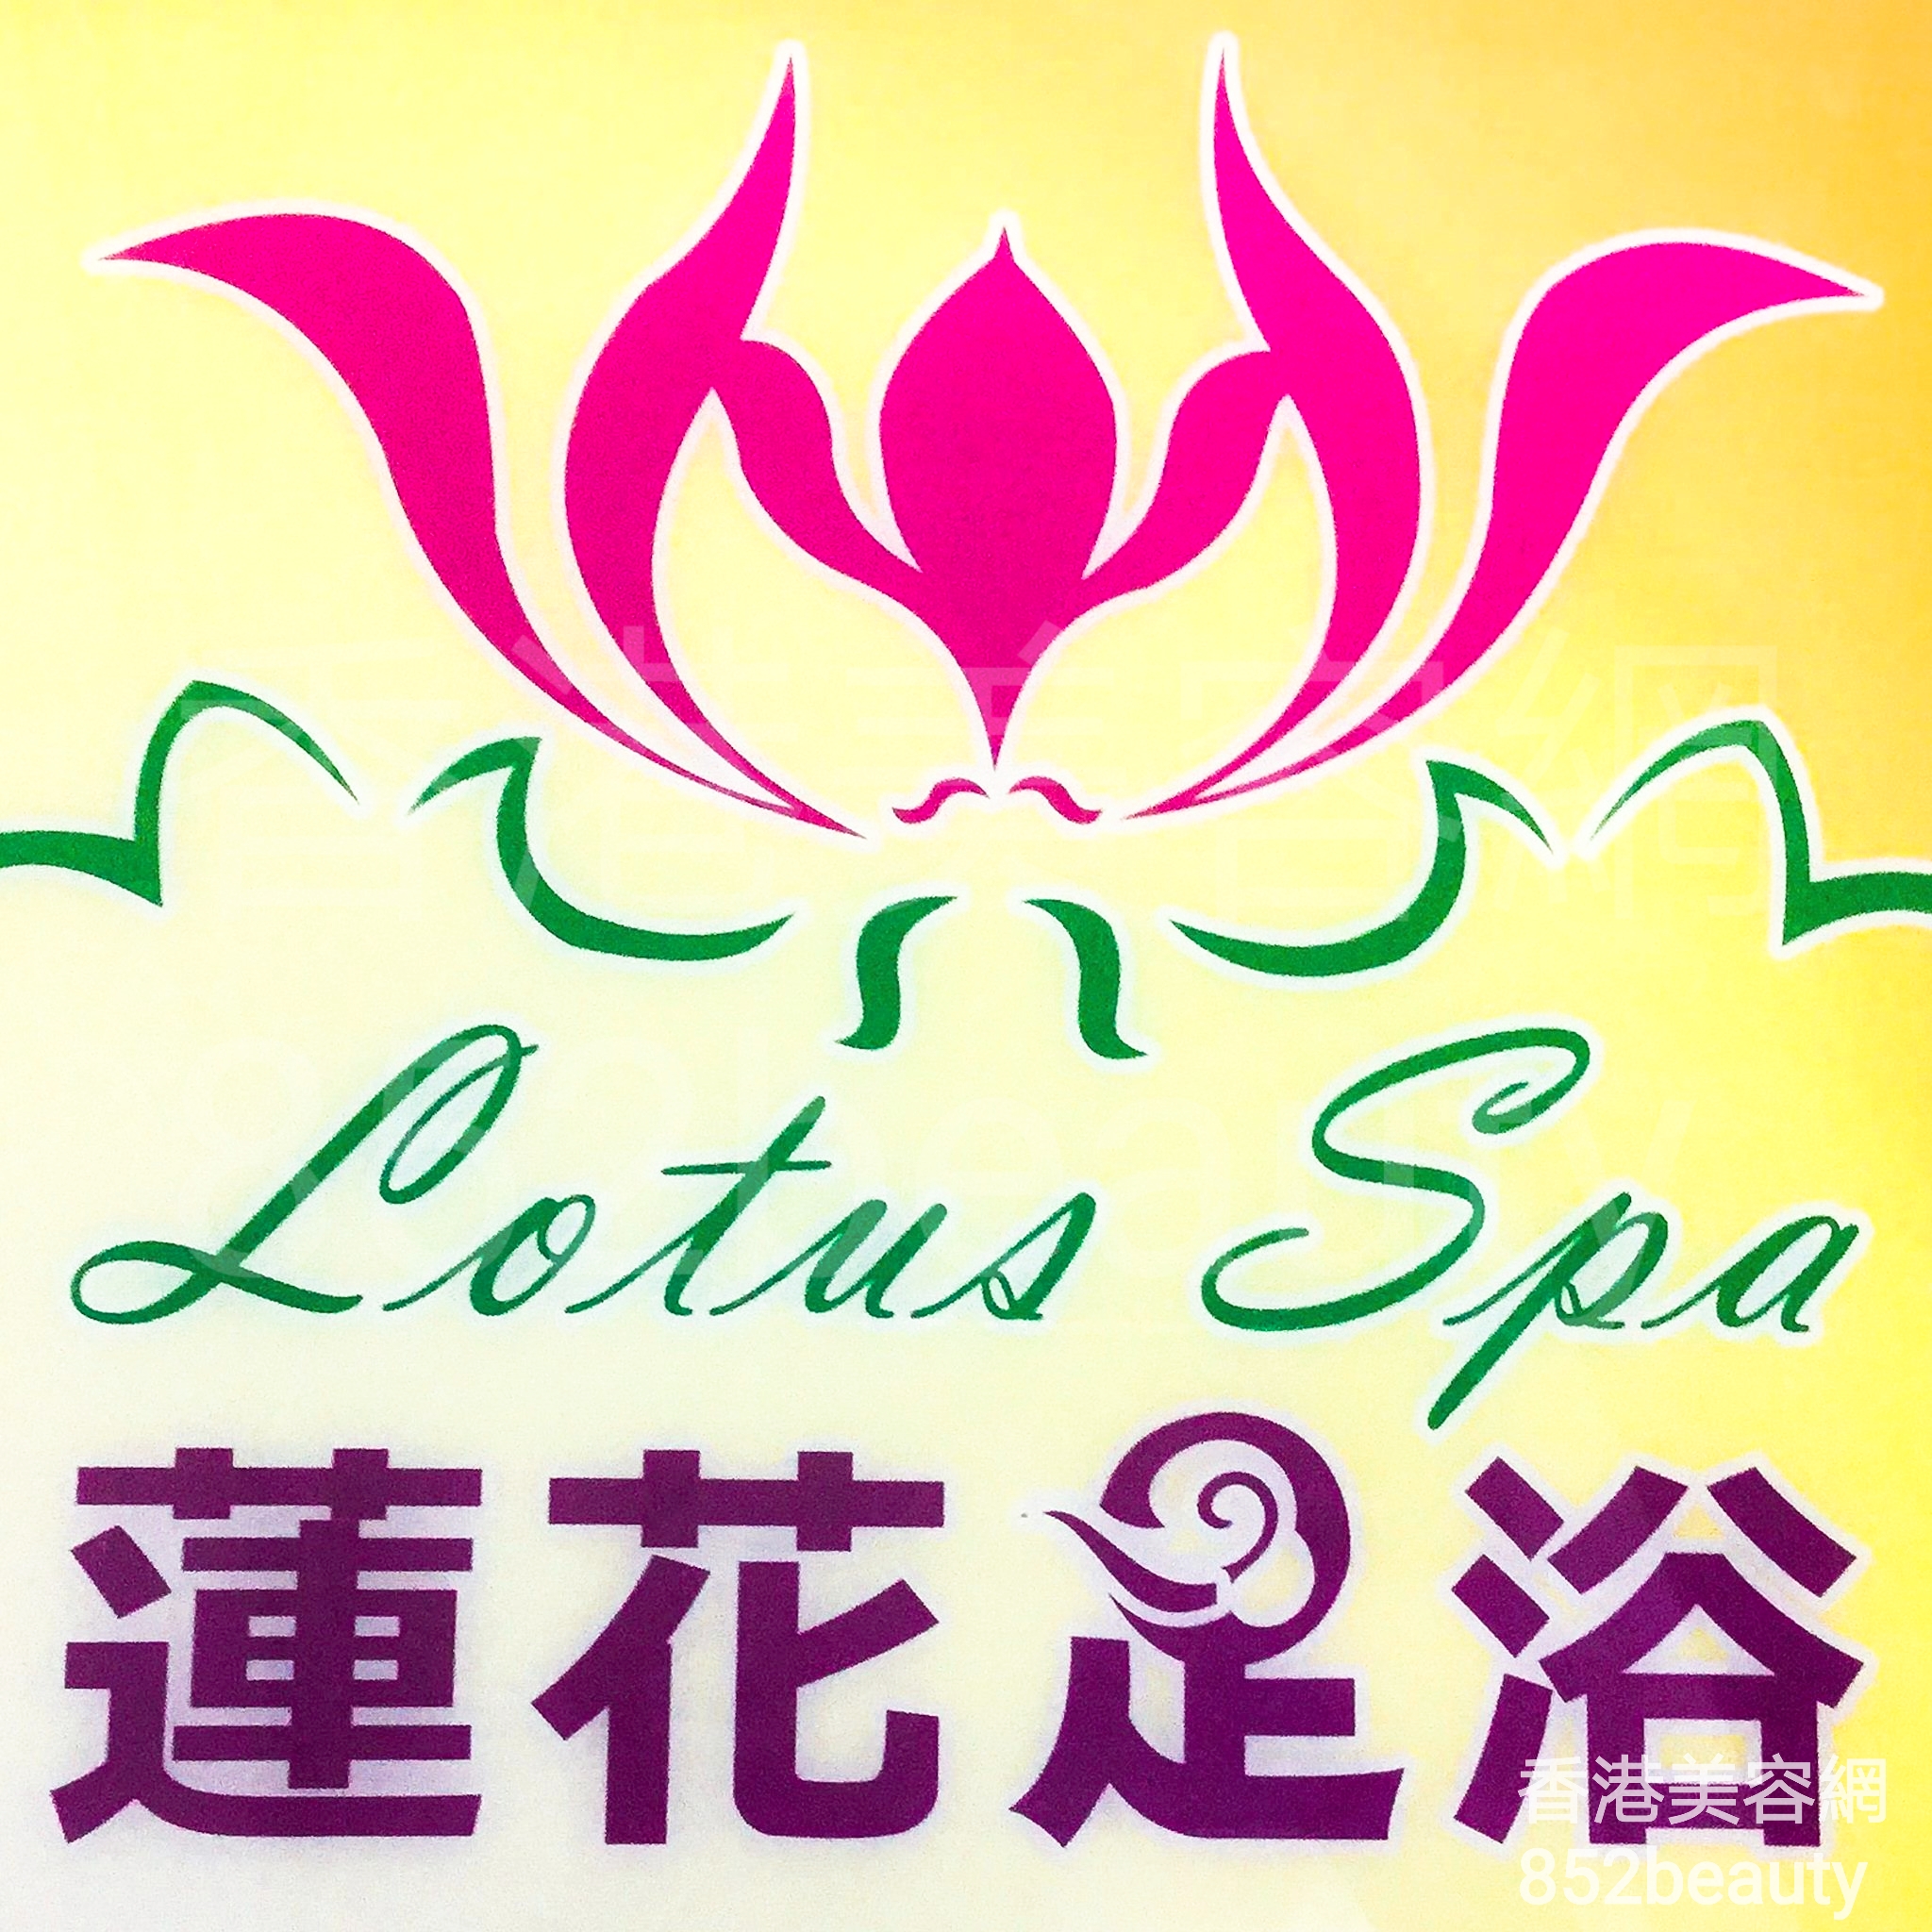 香港美容網 Hong Kong Beauty Salon 美容院 / 美容師: Lotus spa 蓮花足浴